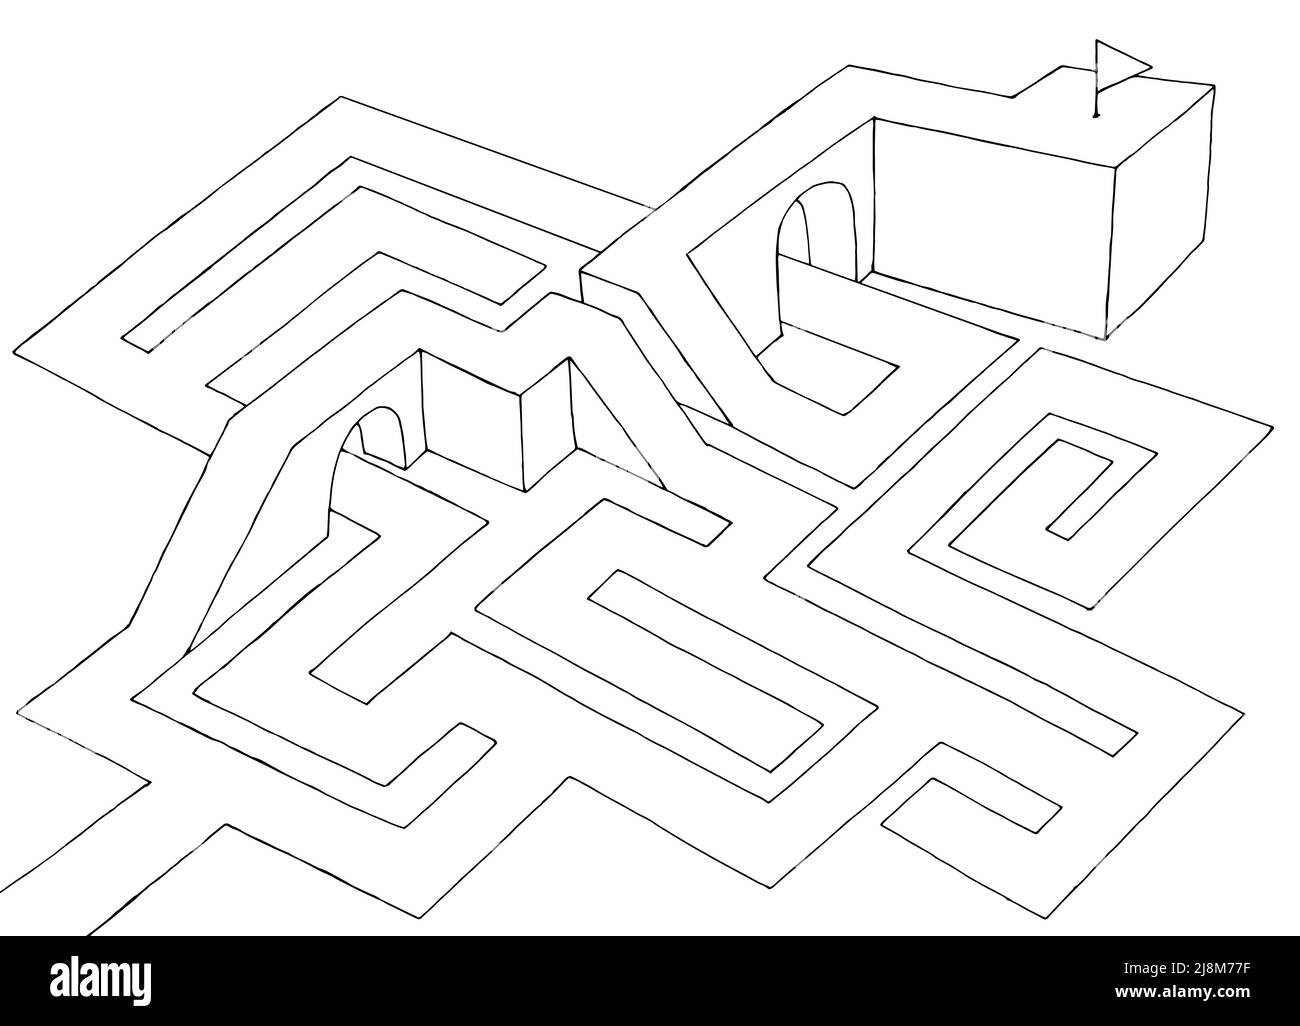 Labyrinthe graphique noir blanc esquisse vue aérienne supérieure vecteur d'illustration Illustration de Vecteur